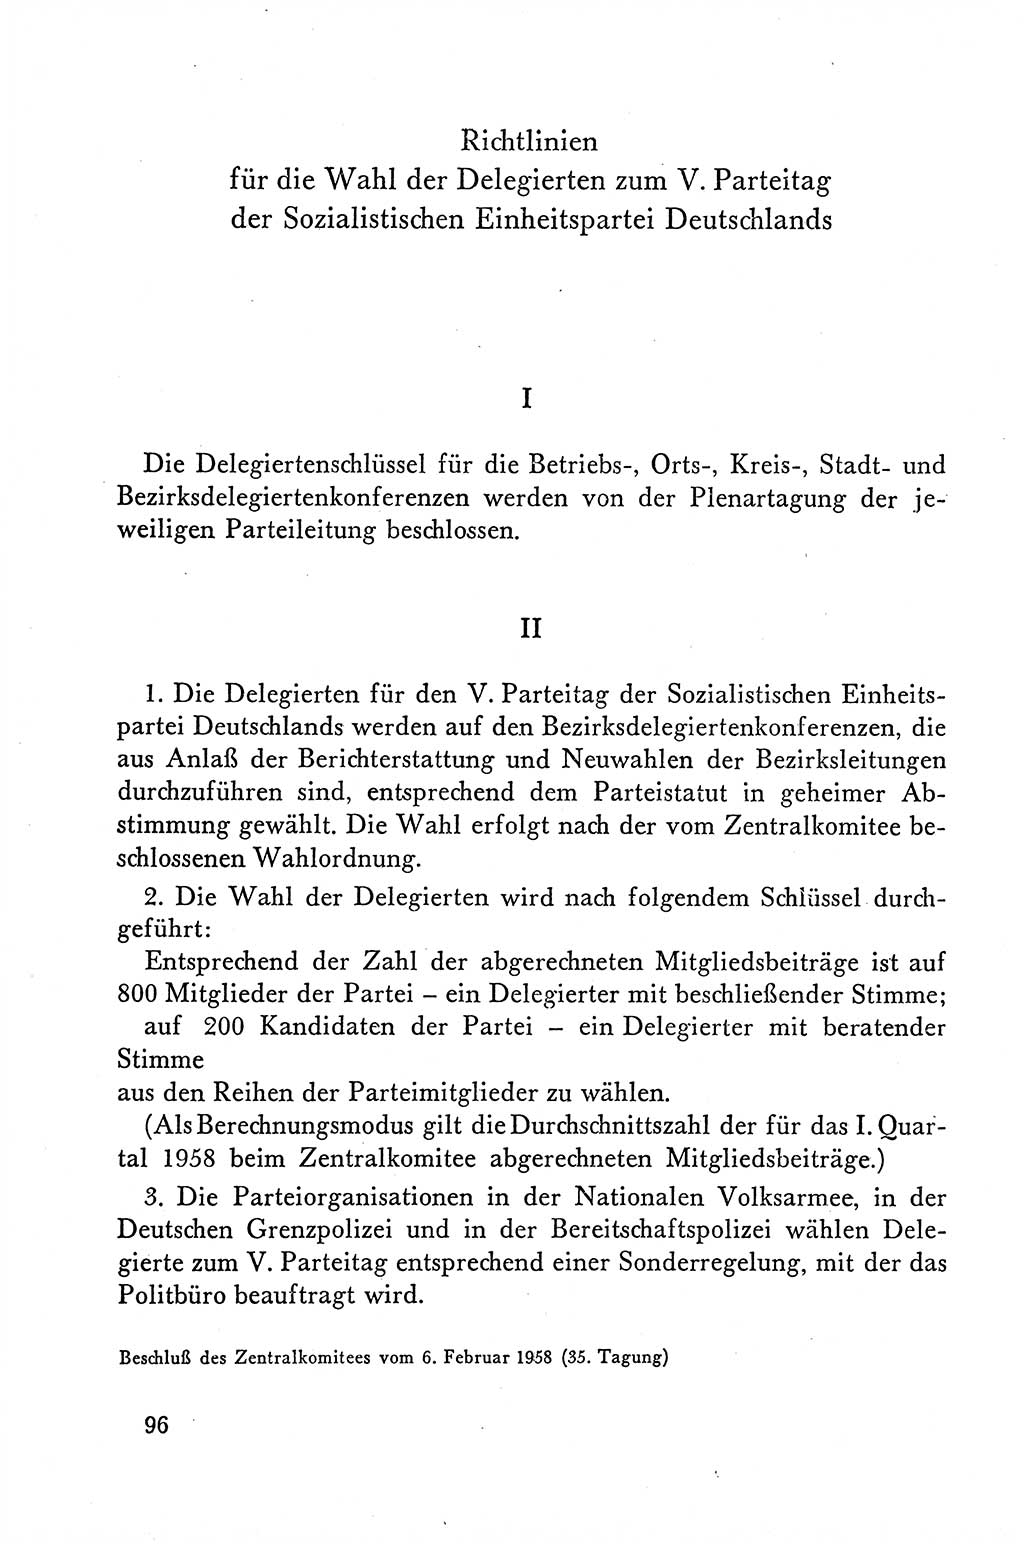 Dokumente der Sozialistischen Einheitspartei Deutschlands (SED) [Deutsche Demokratische Republik (DDR)] 1958-1959, Seite 96 (Dok. SED DDR 1958-1959, S. 96)